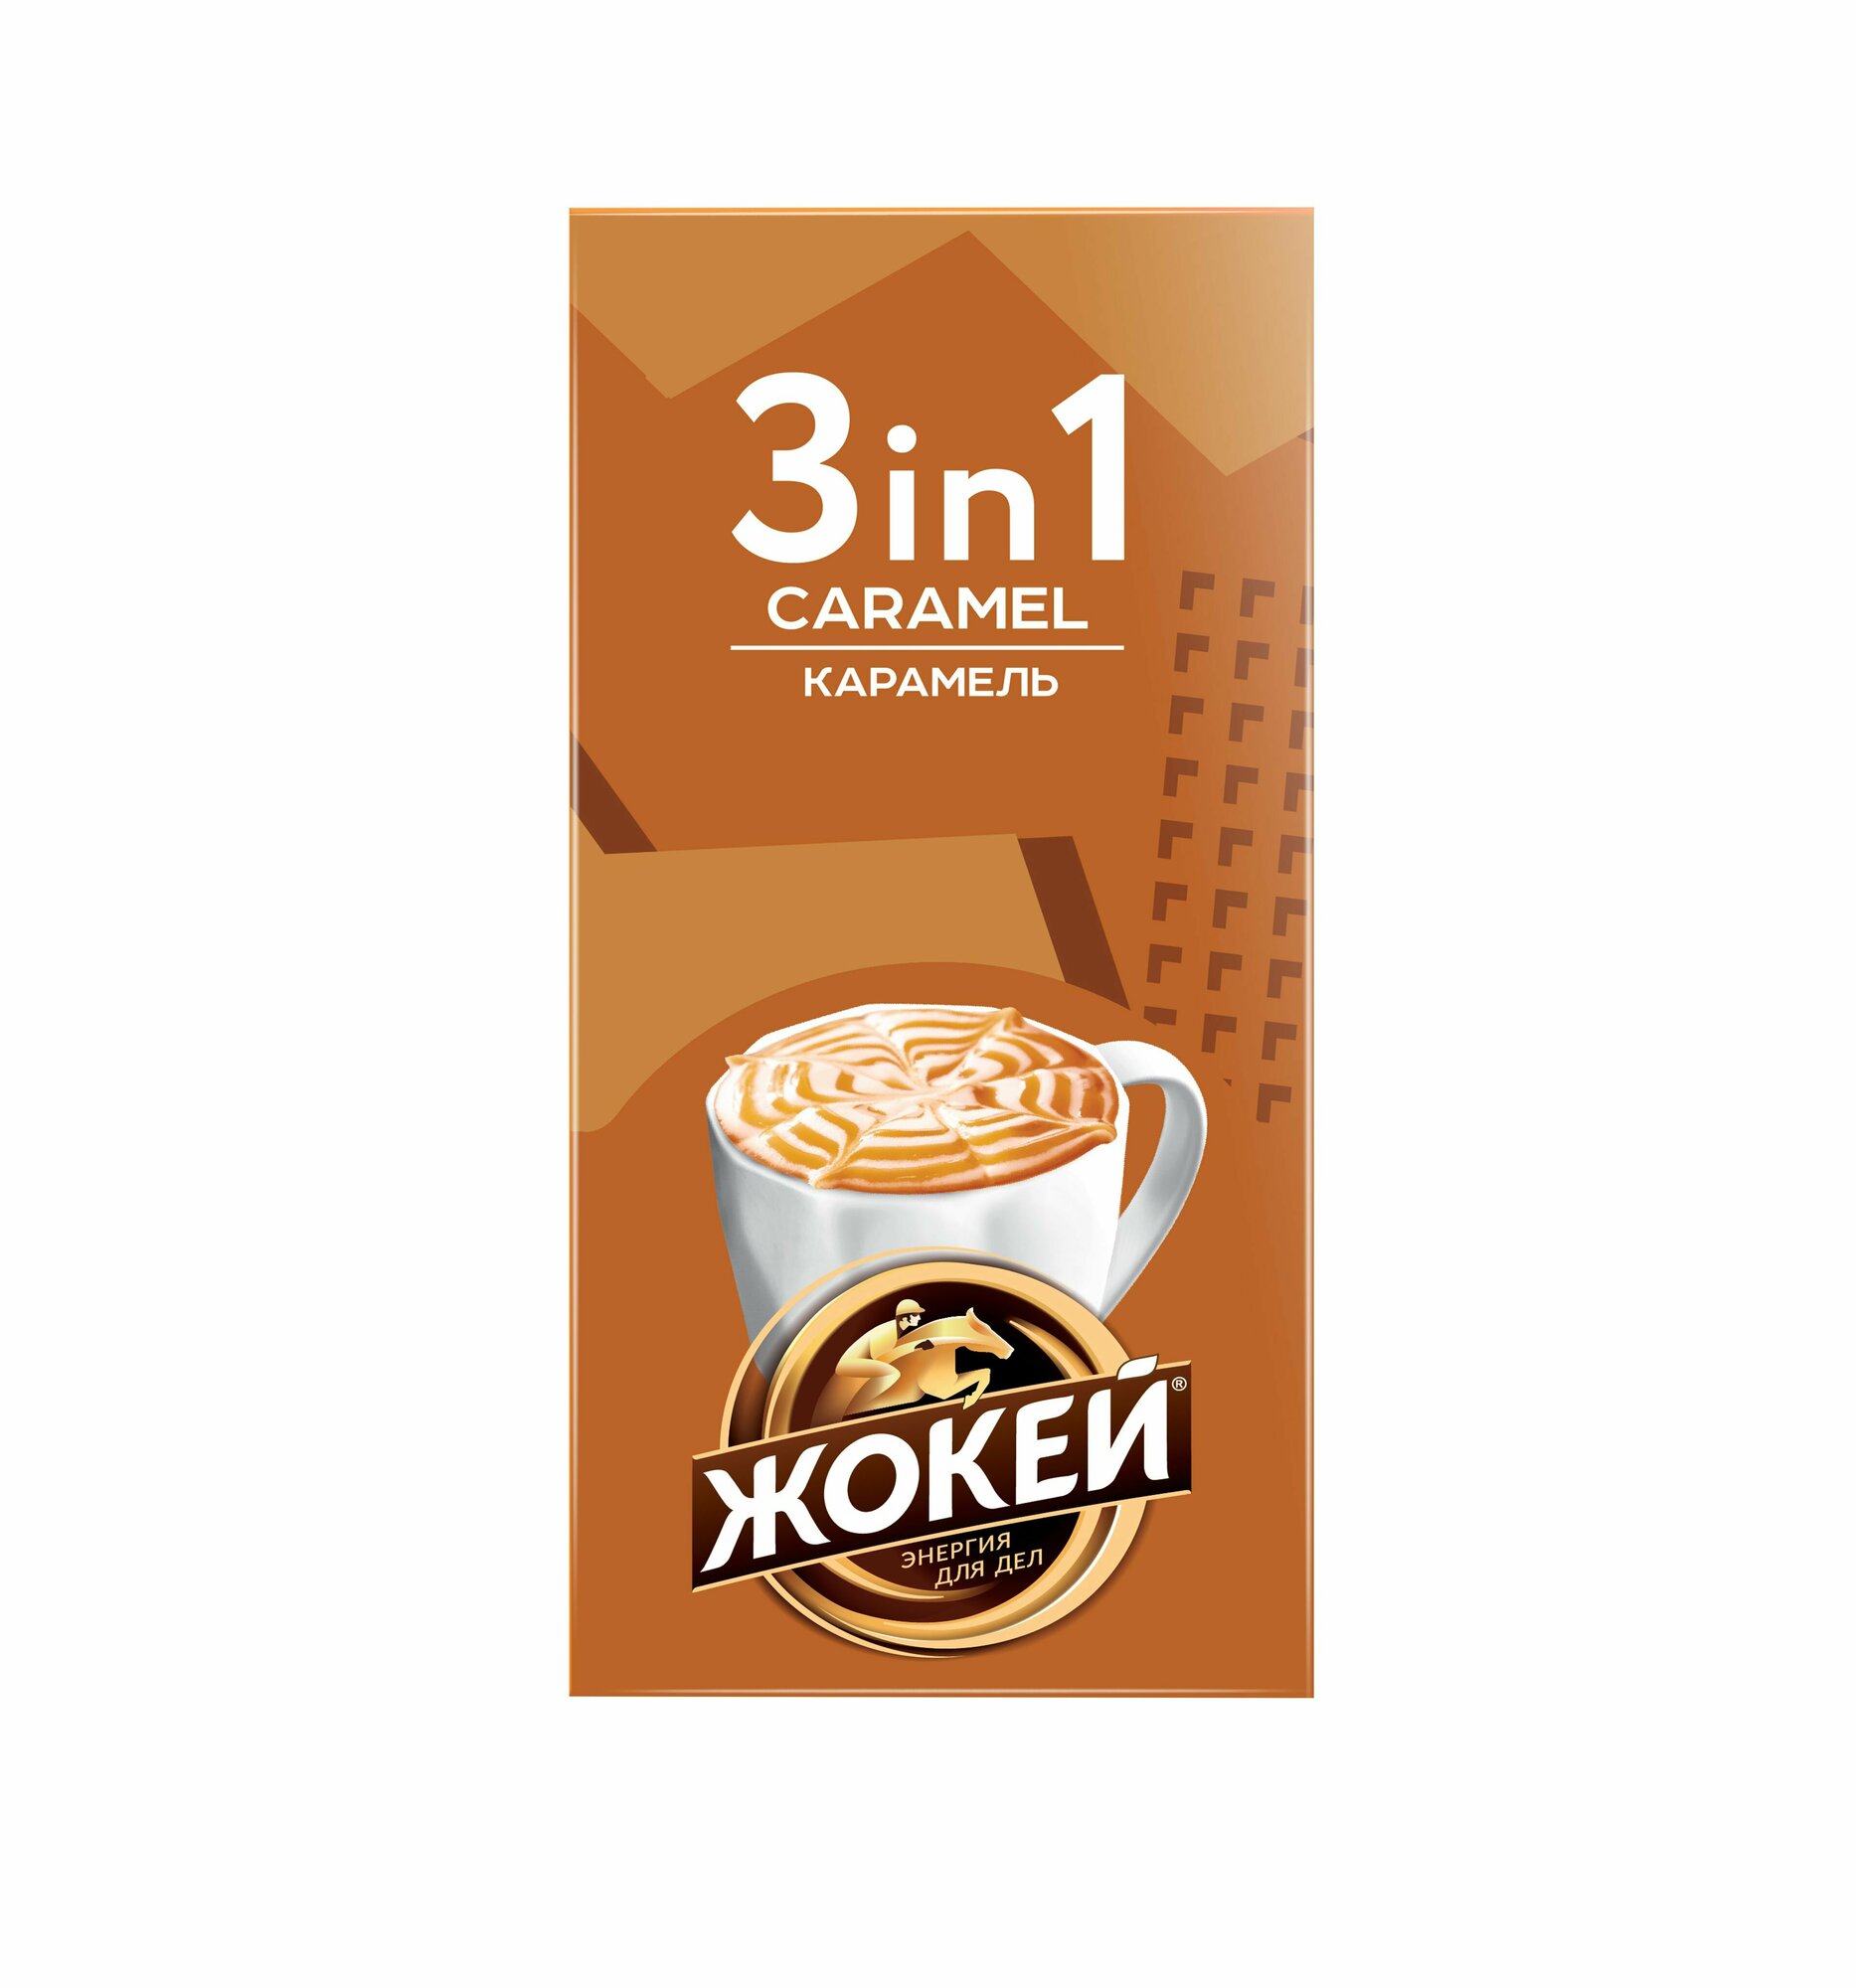 Кофе растворимый Жокей Карамель, 3 в 1 (12 г*10 шт), подарок на 8 марта, подарок на день рождения